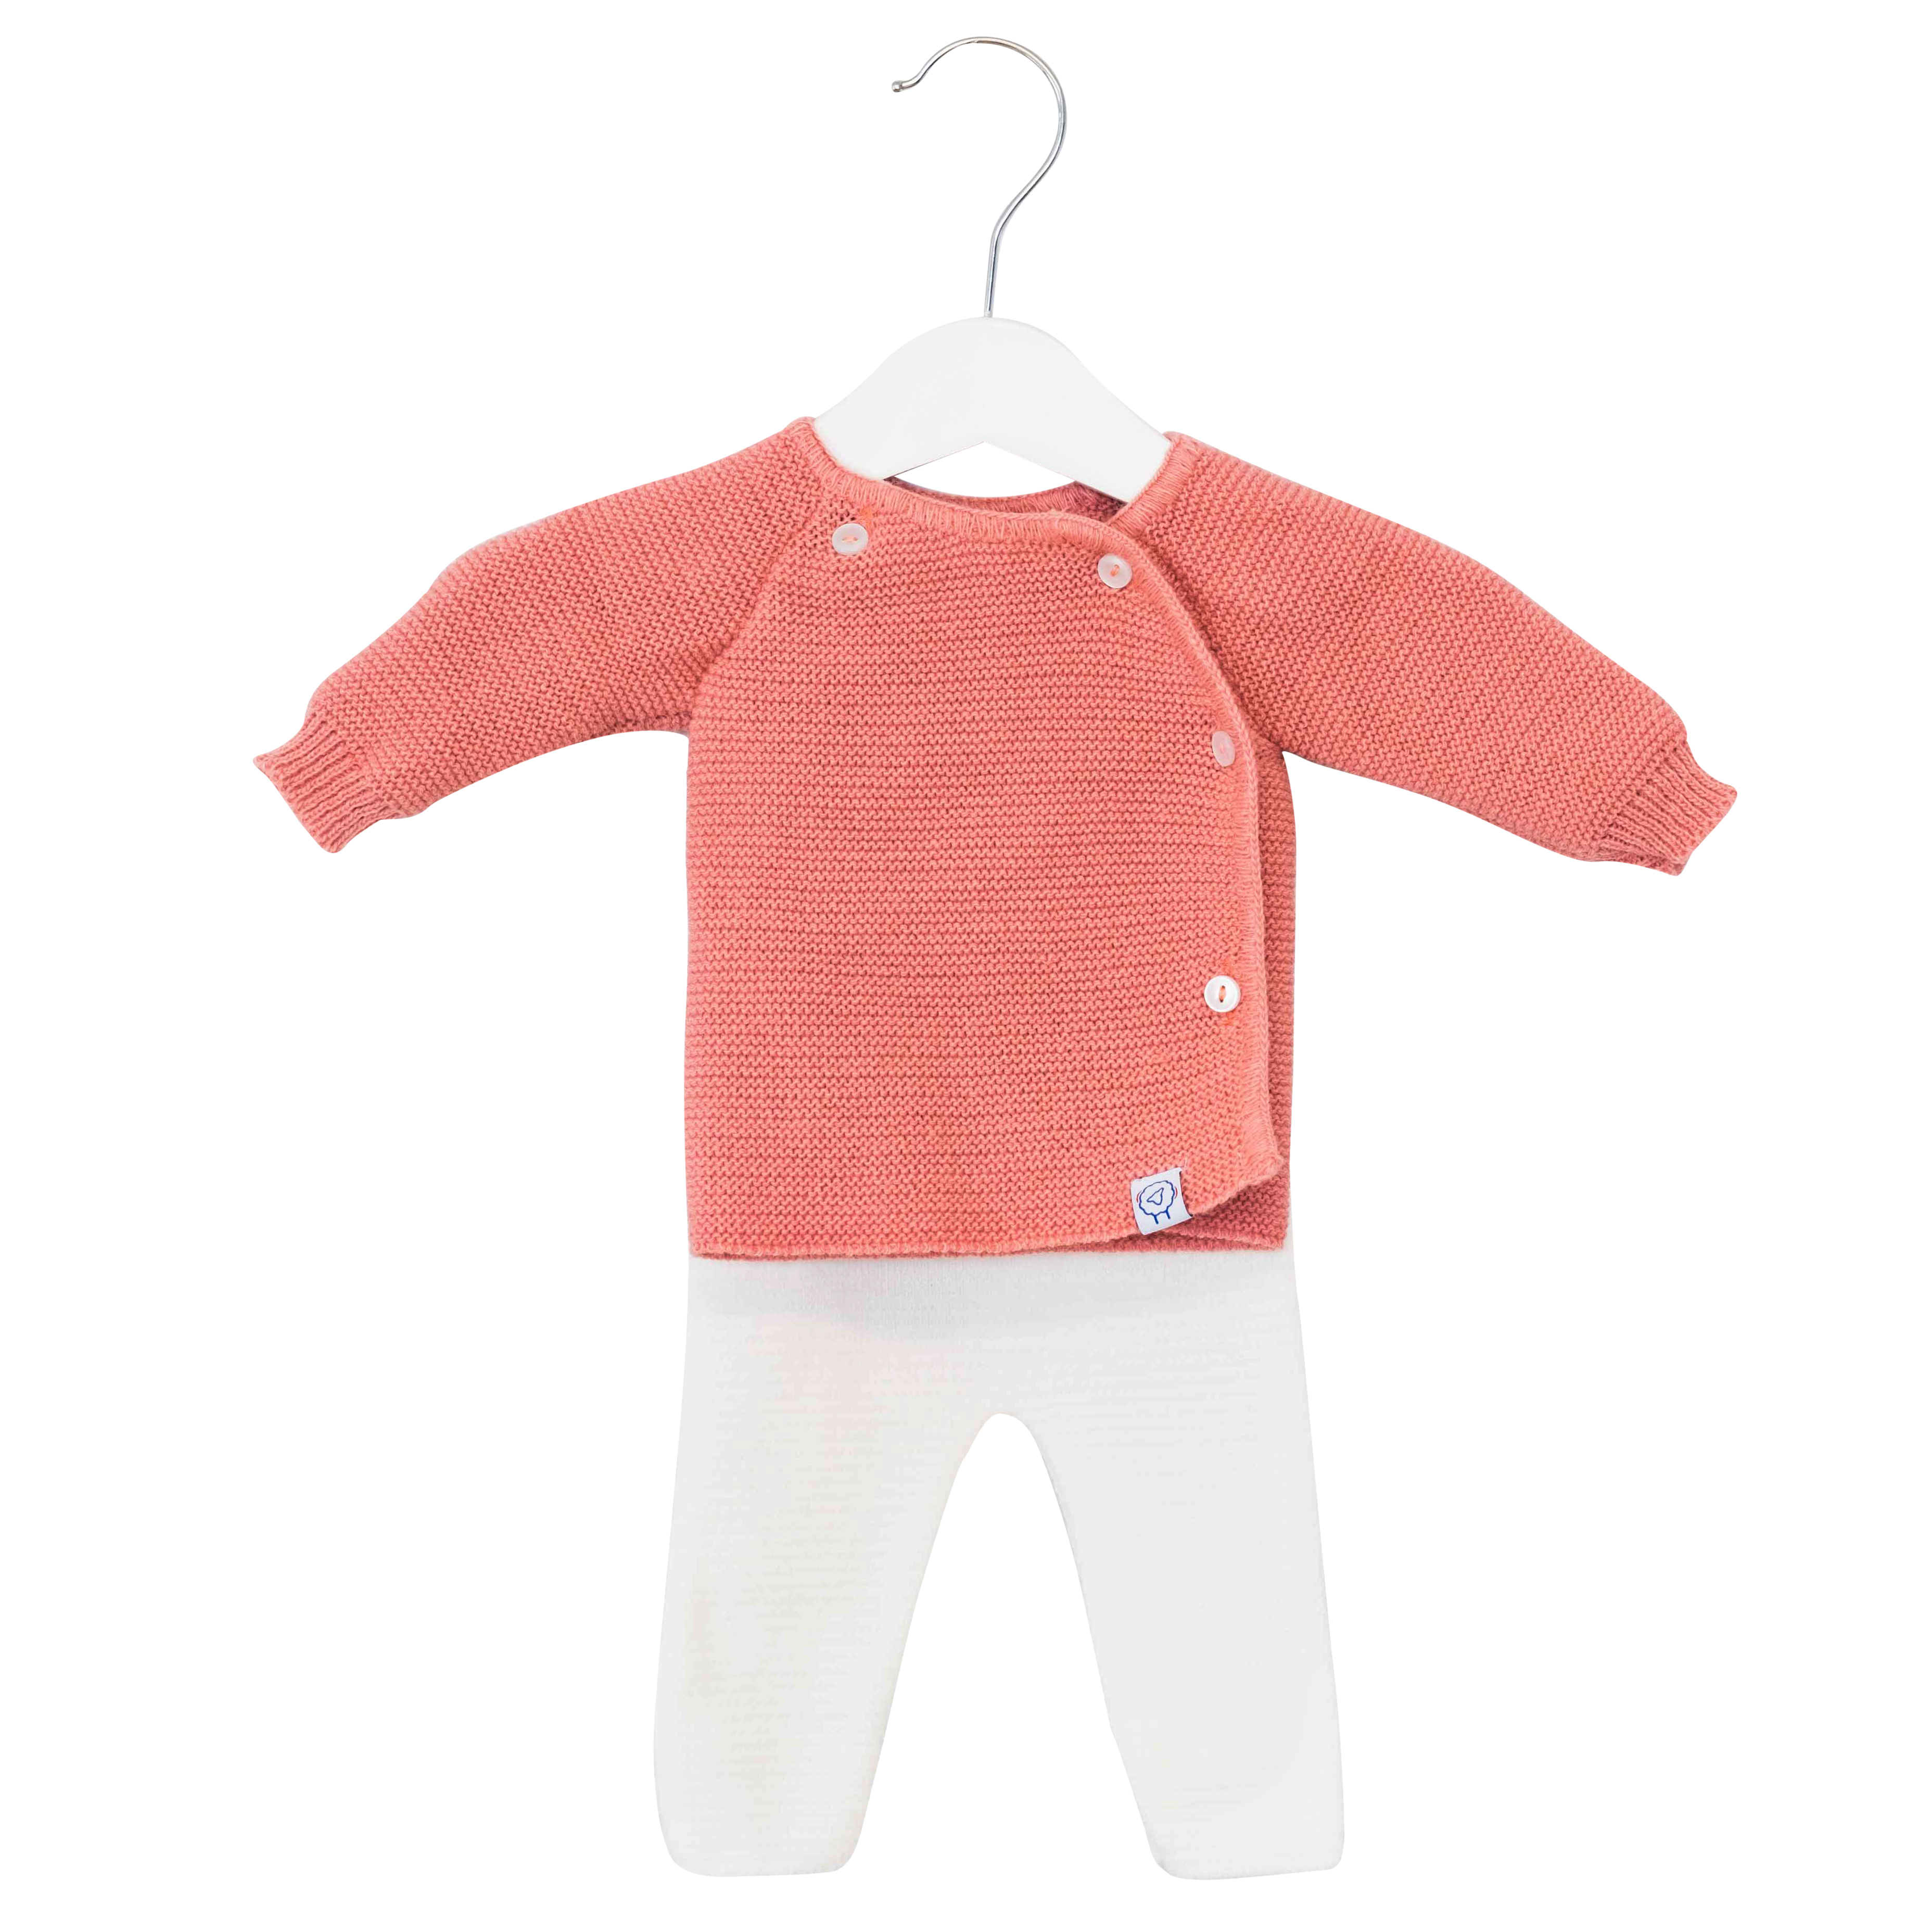 Vêtements bébé personnalisés - La Manufacture de Layette